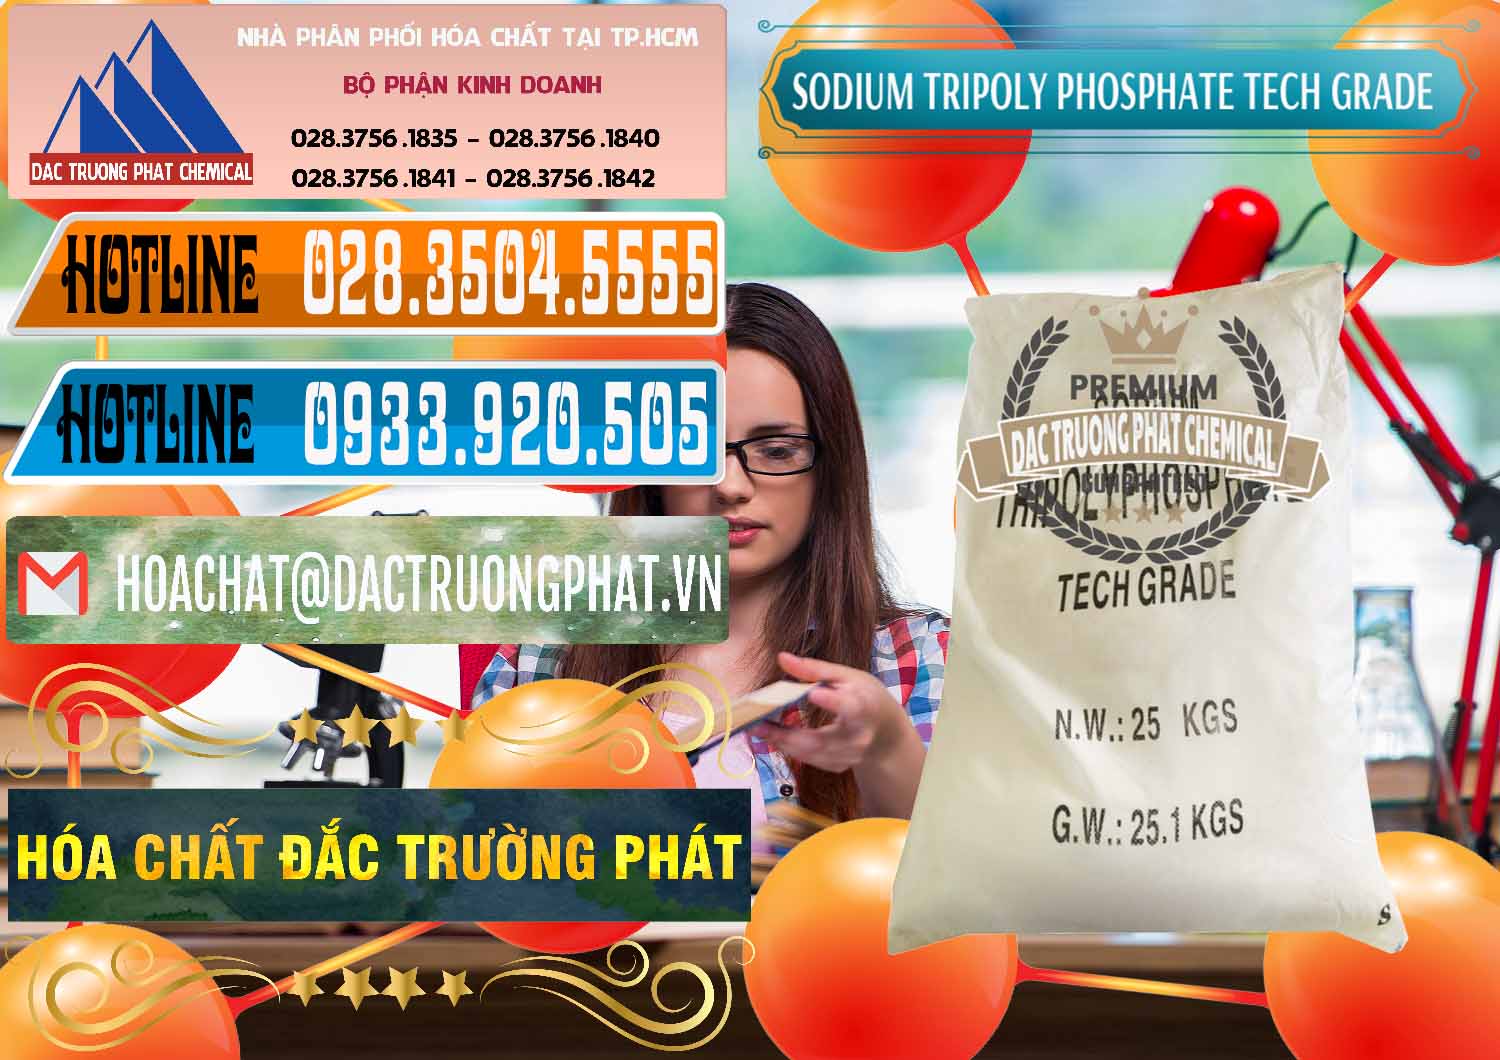 Công ty chuyên cung cấp & bán Sodium Tripoly Phosphate - STPP Tech Grade Trung Quốc China - 0453 - Chuyên bán & phân phối hóa chất tại TP.HCM - stmp.net